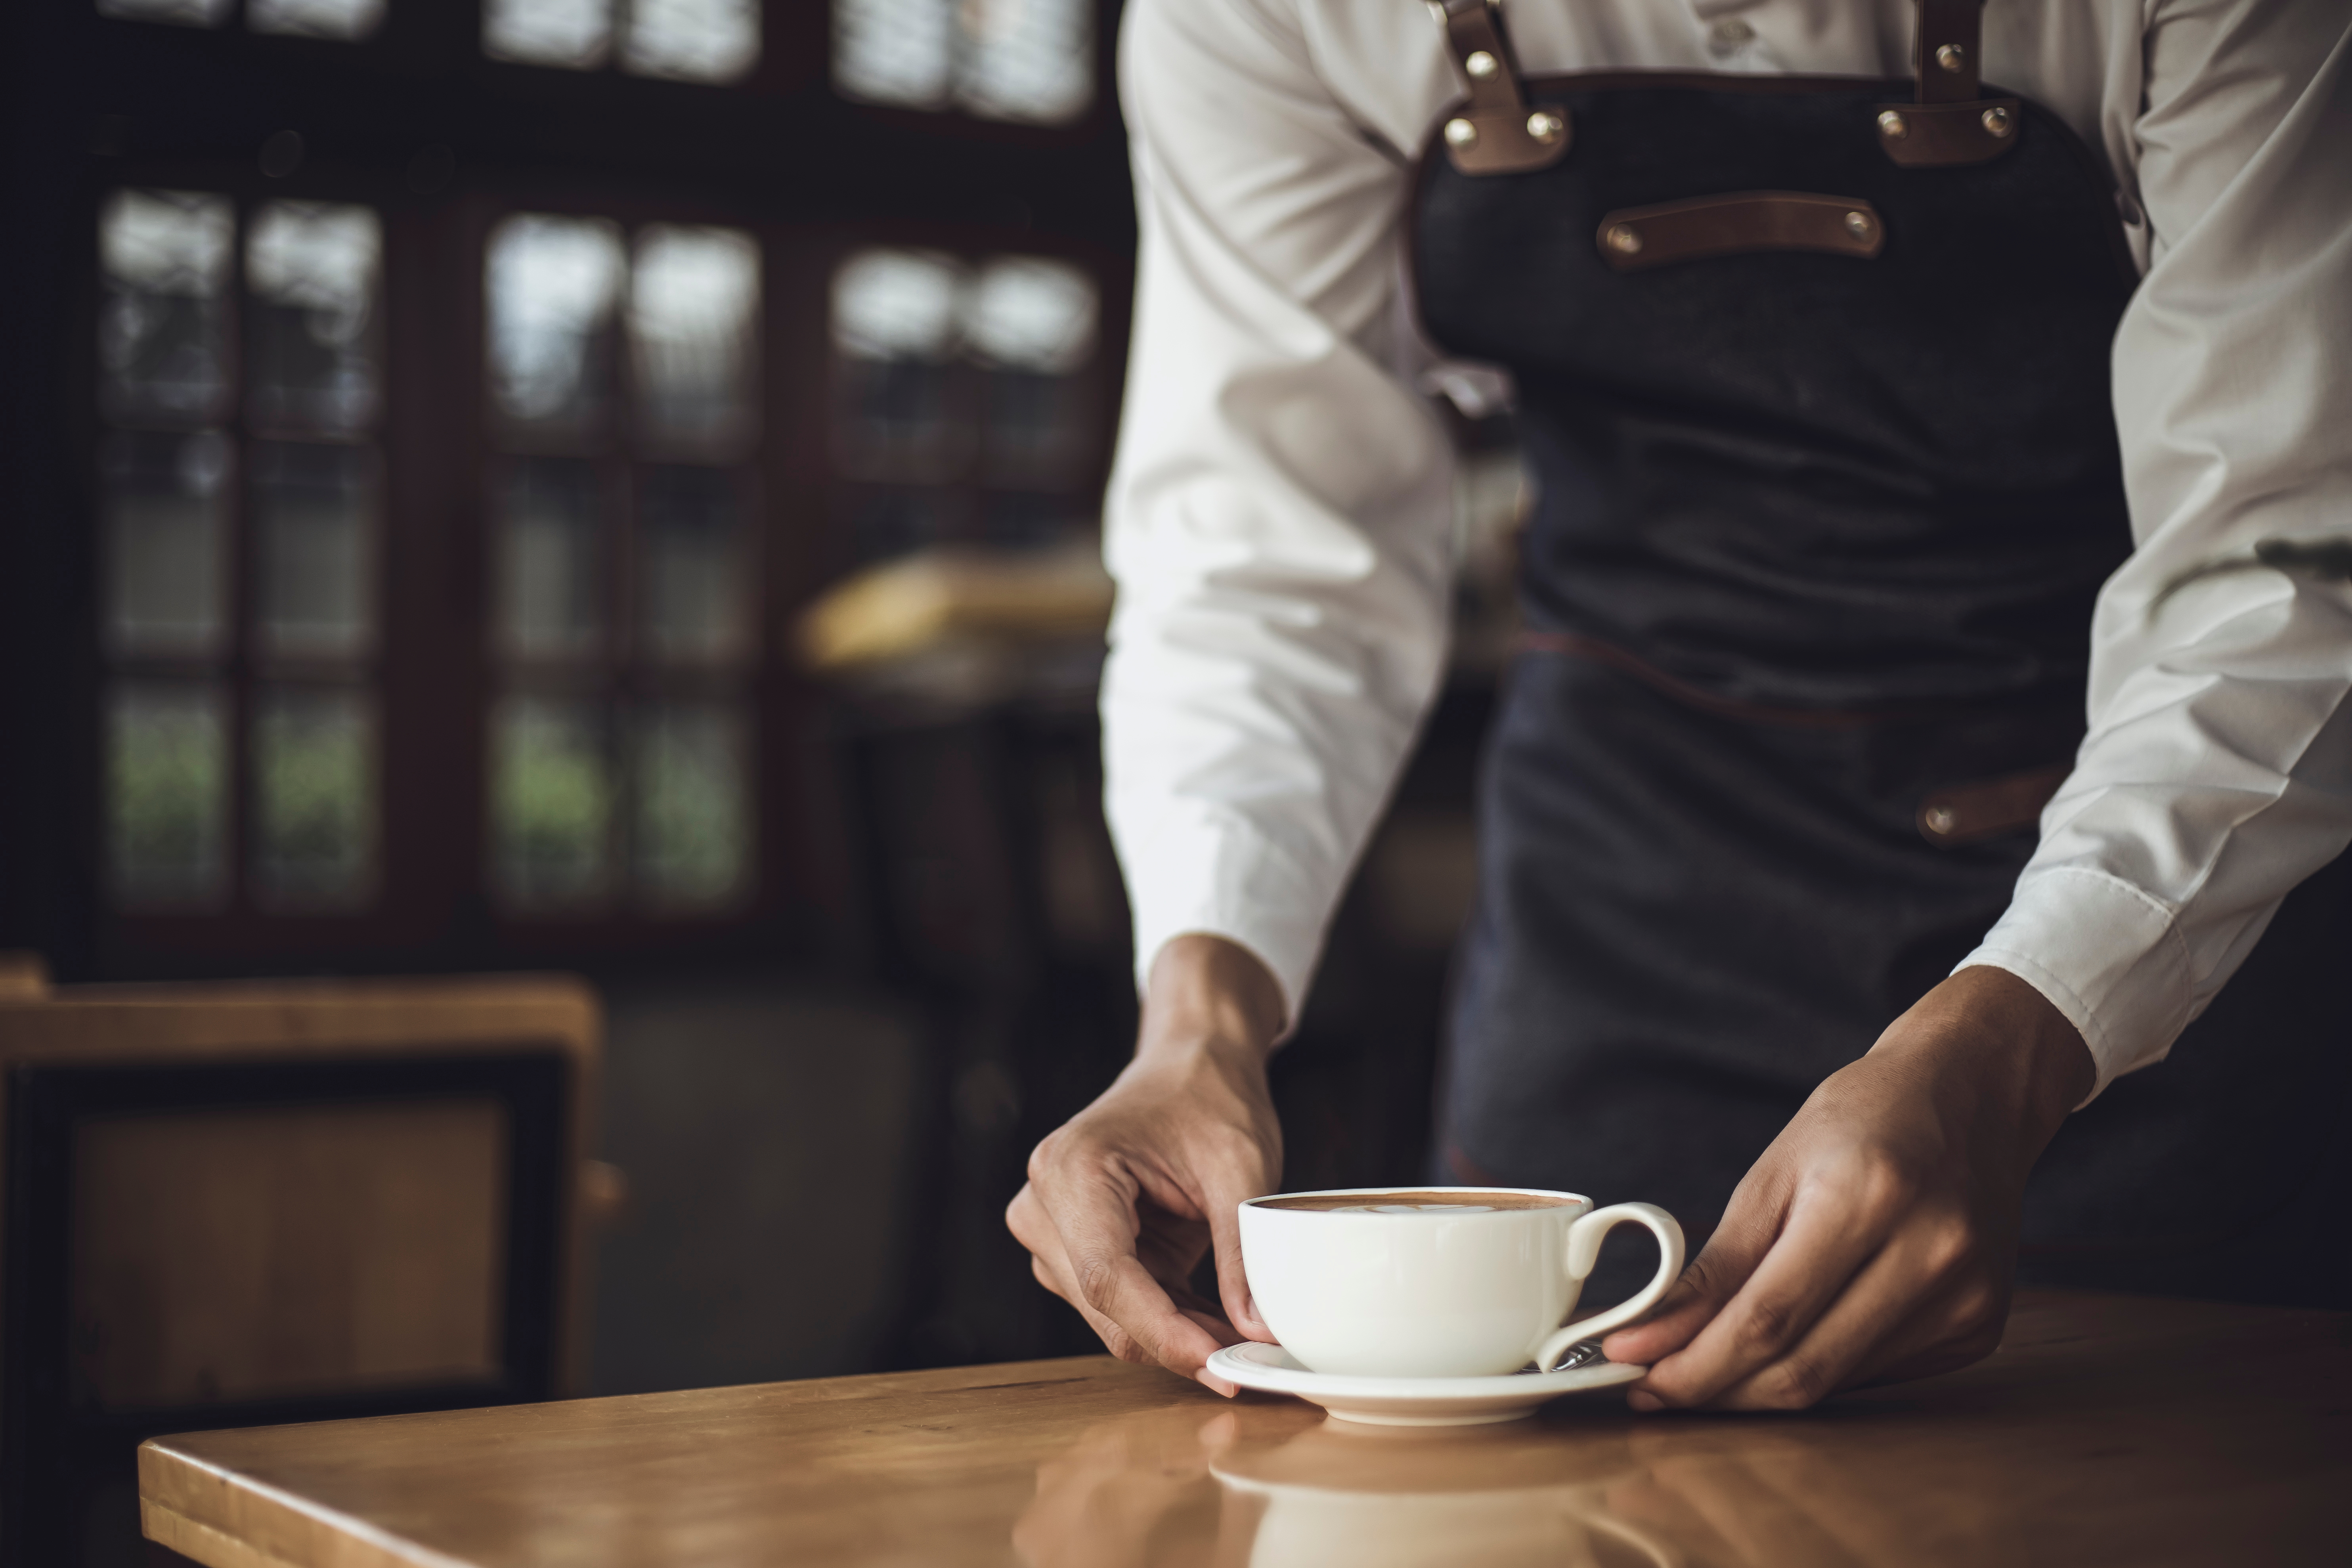 Barista masculino preparando café para un cliente en una cafetería. | Fuente: Shutterstock